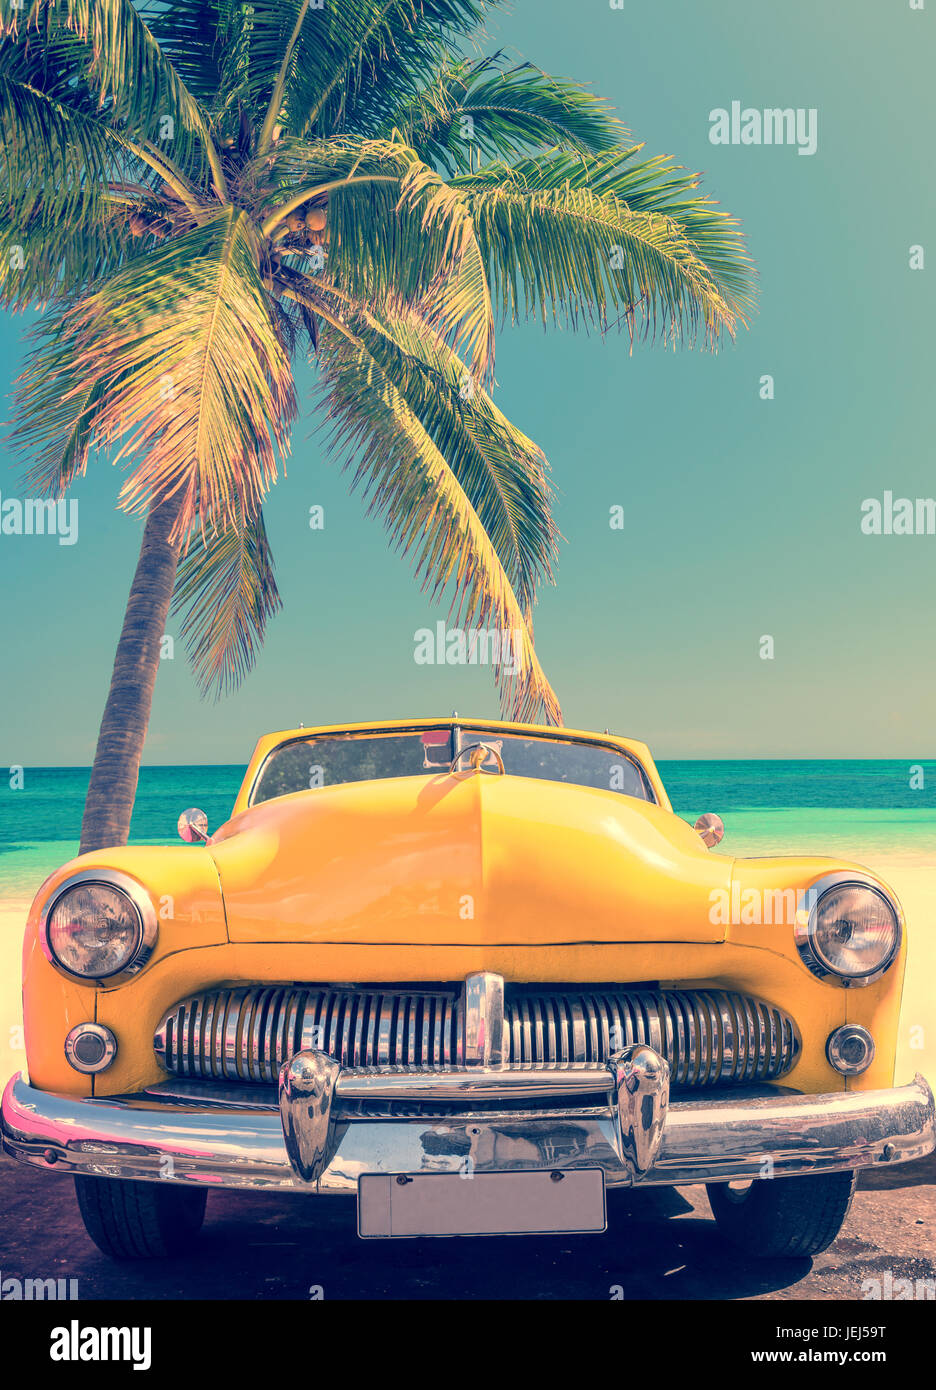 Auto classica su una spiaggia tropicale con palme, processo vintage Foto Stock